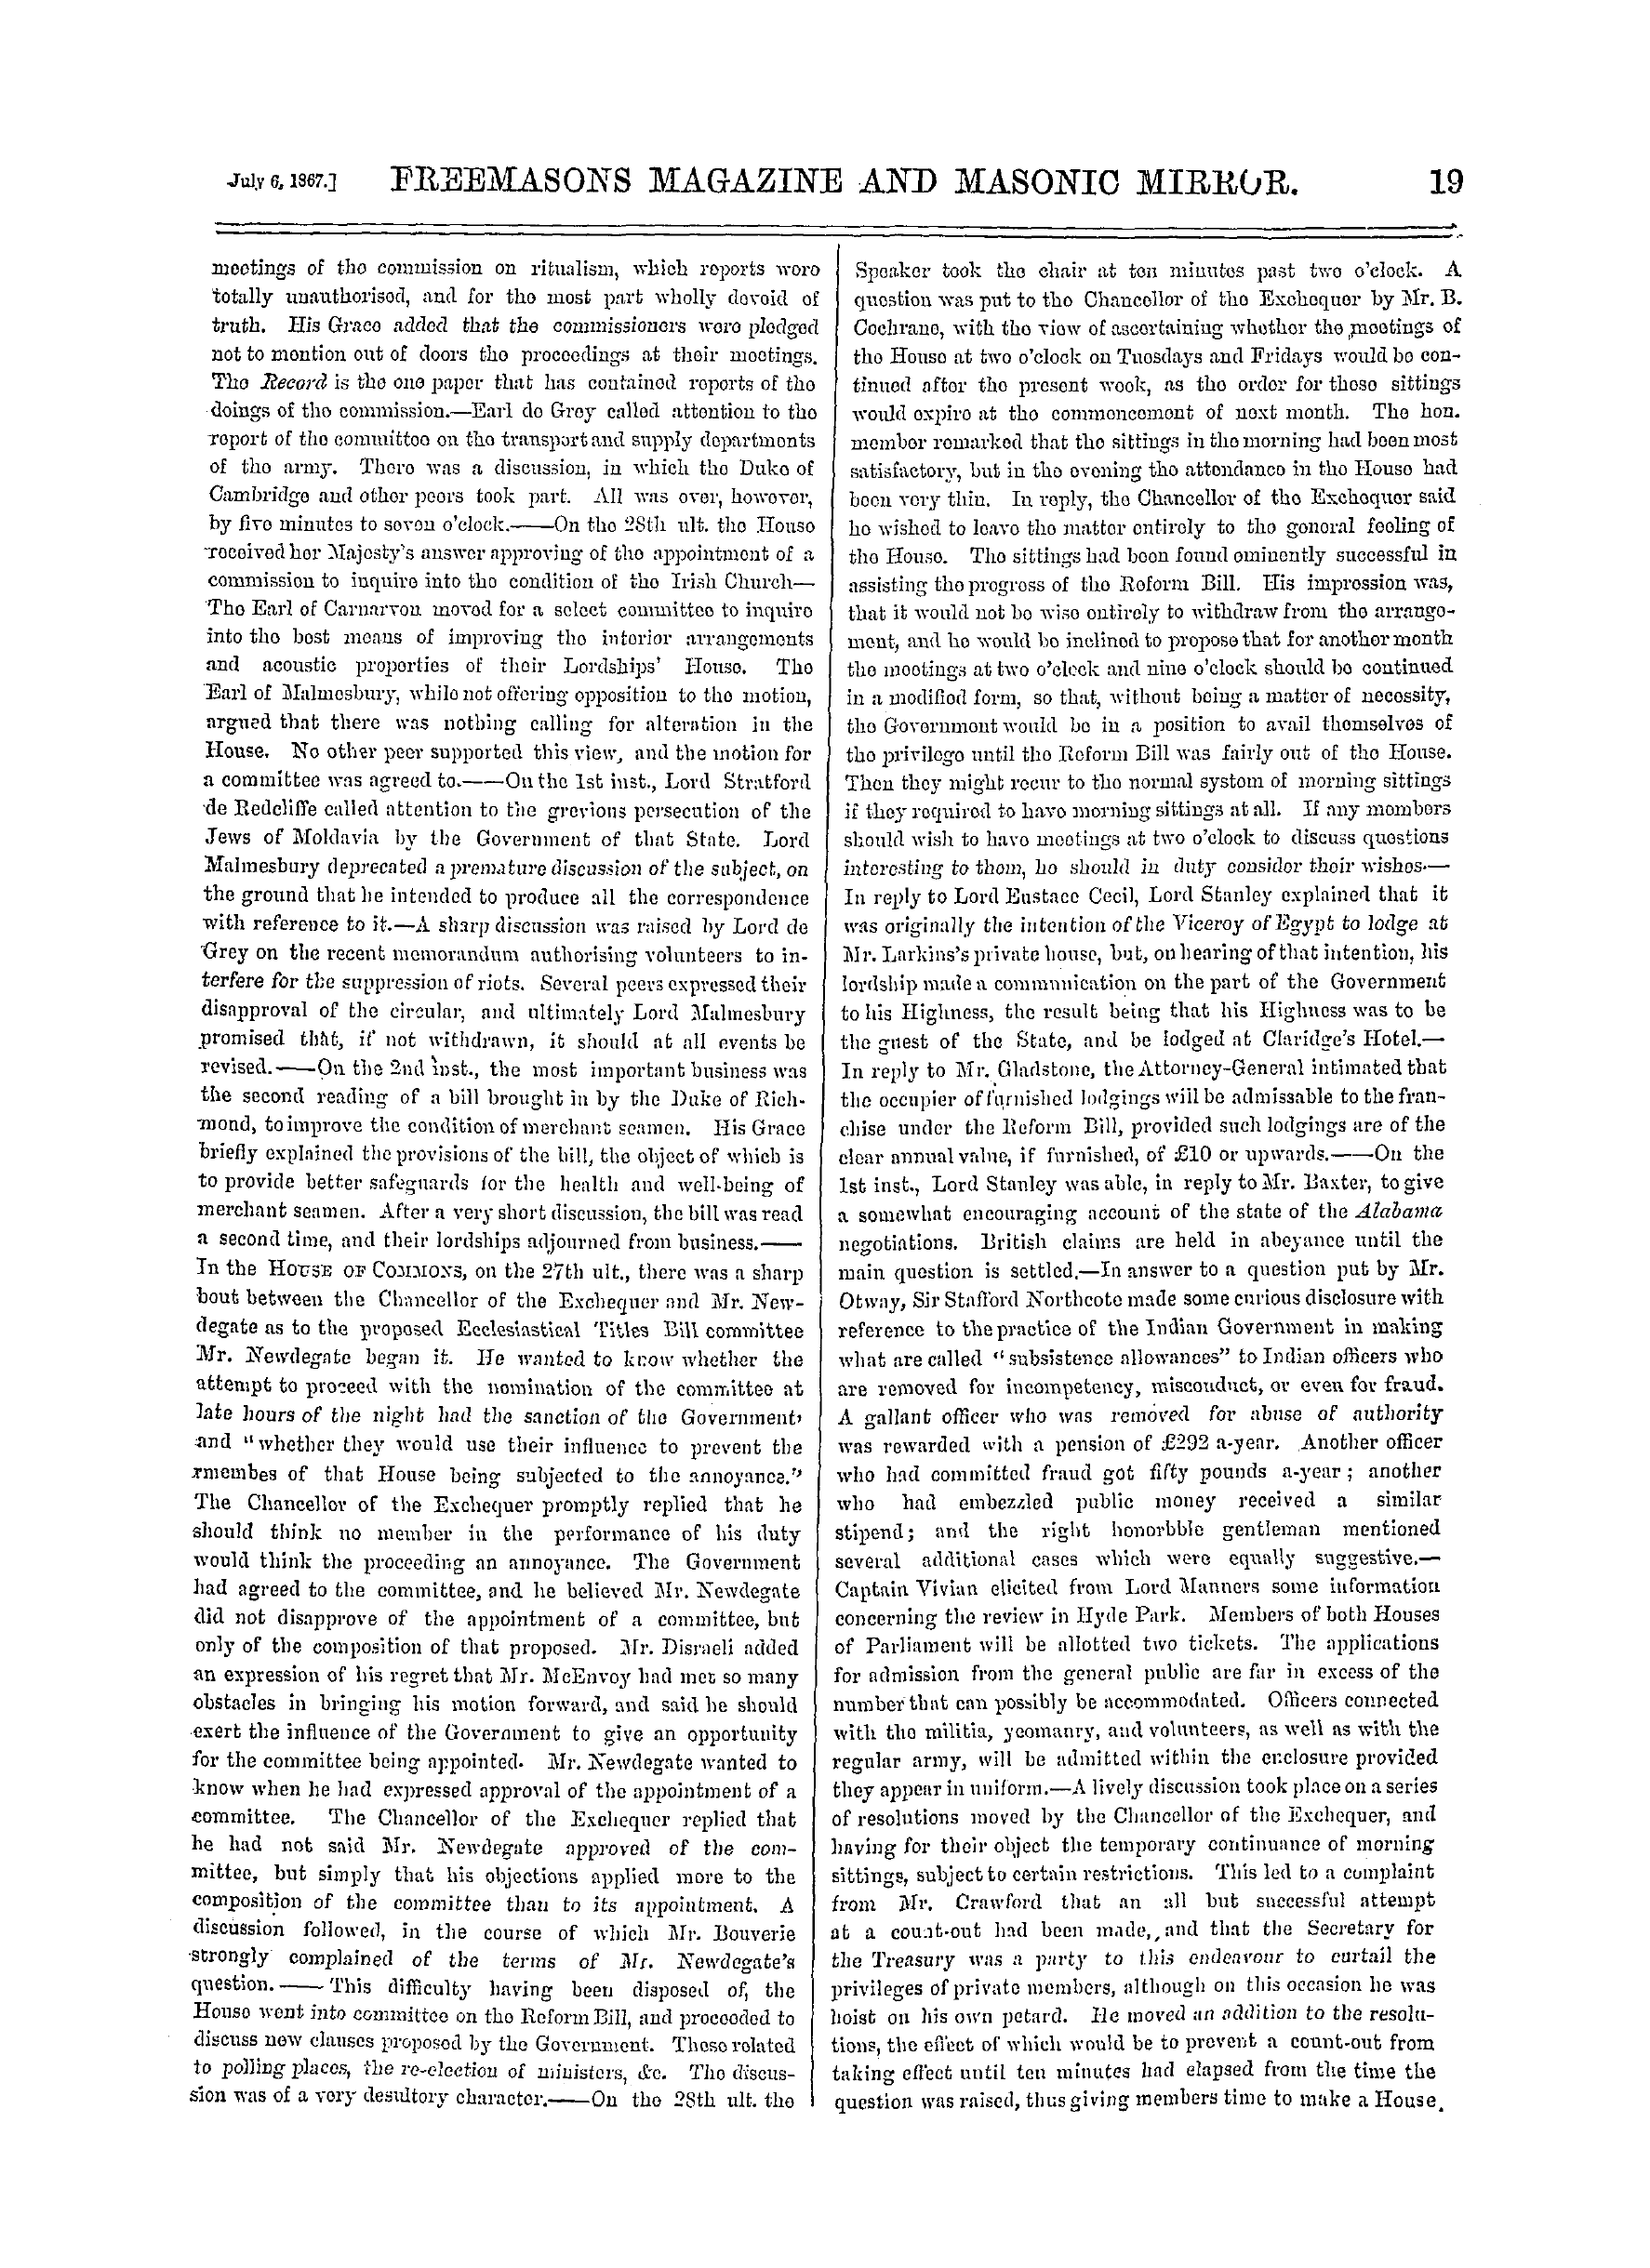 The Freemasons' Monthly Magazine: 1867-07-06: 27